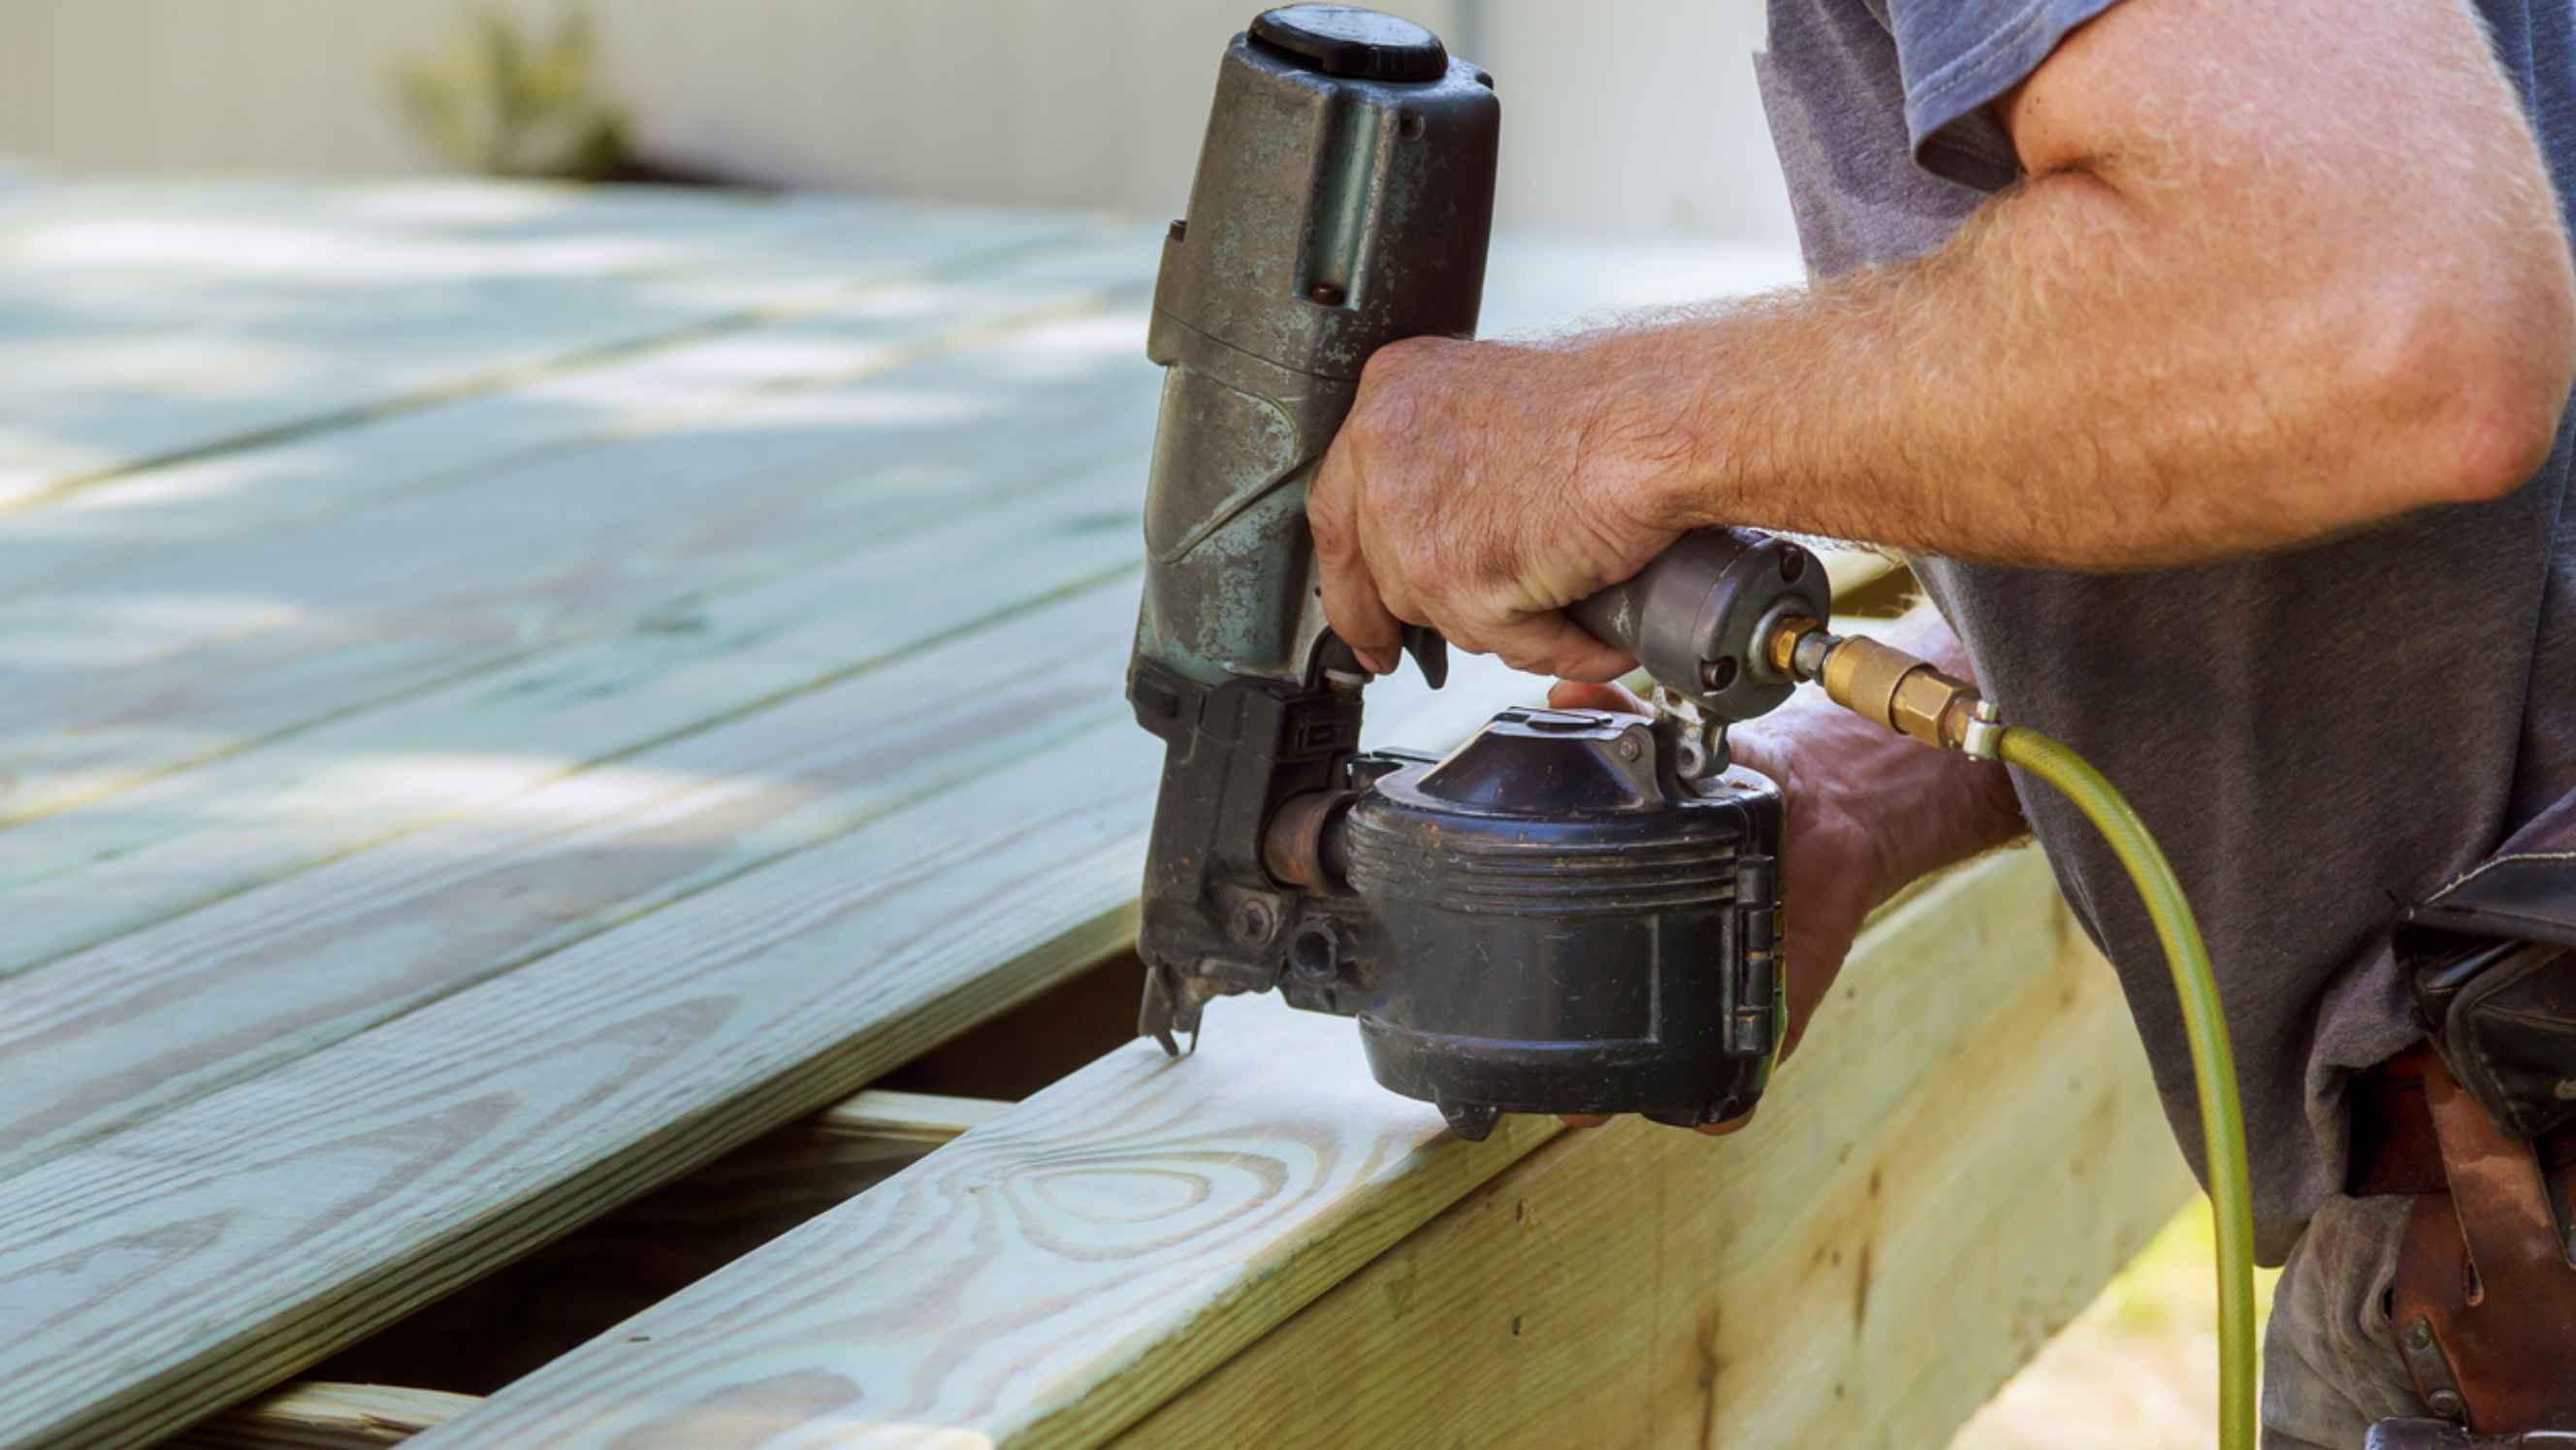 Nail gun vs. staple gun - A person installing wood on deck using a nail gun